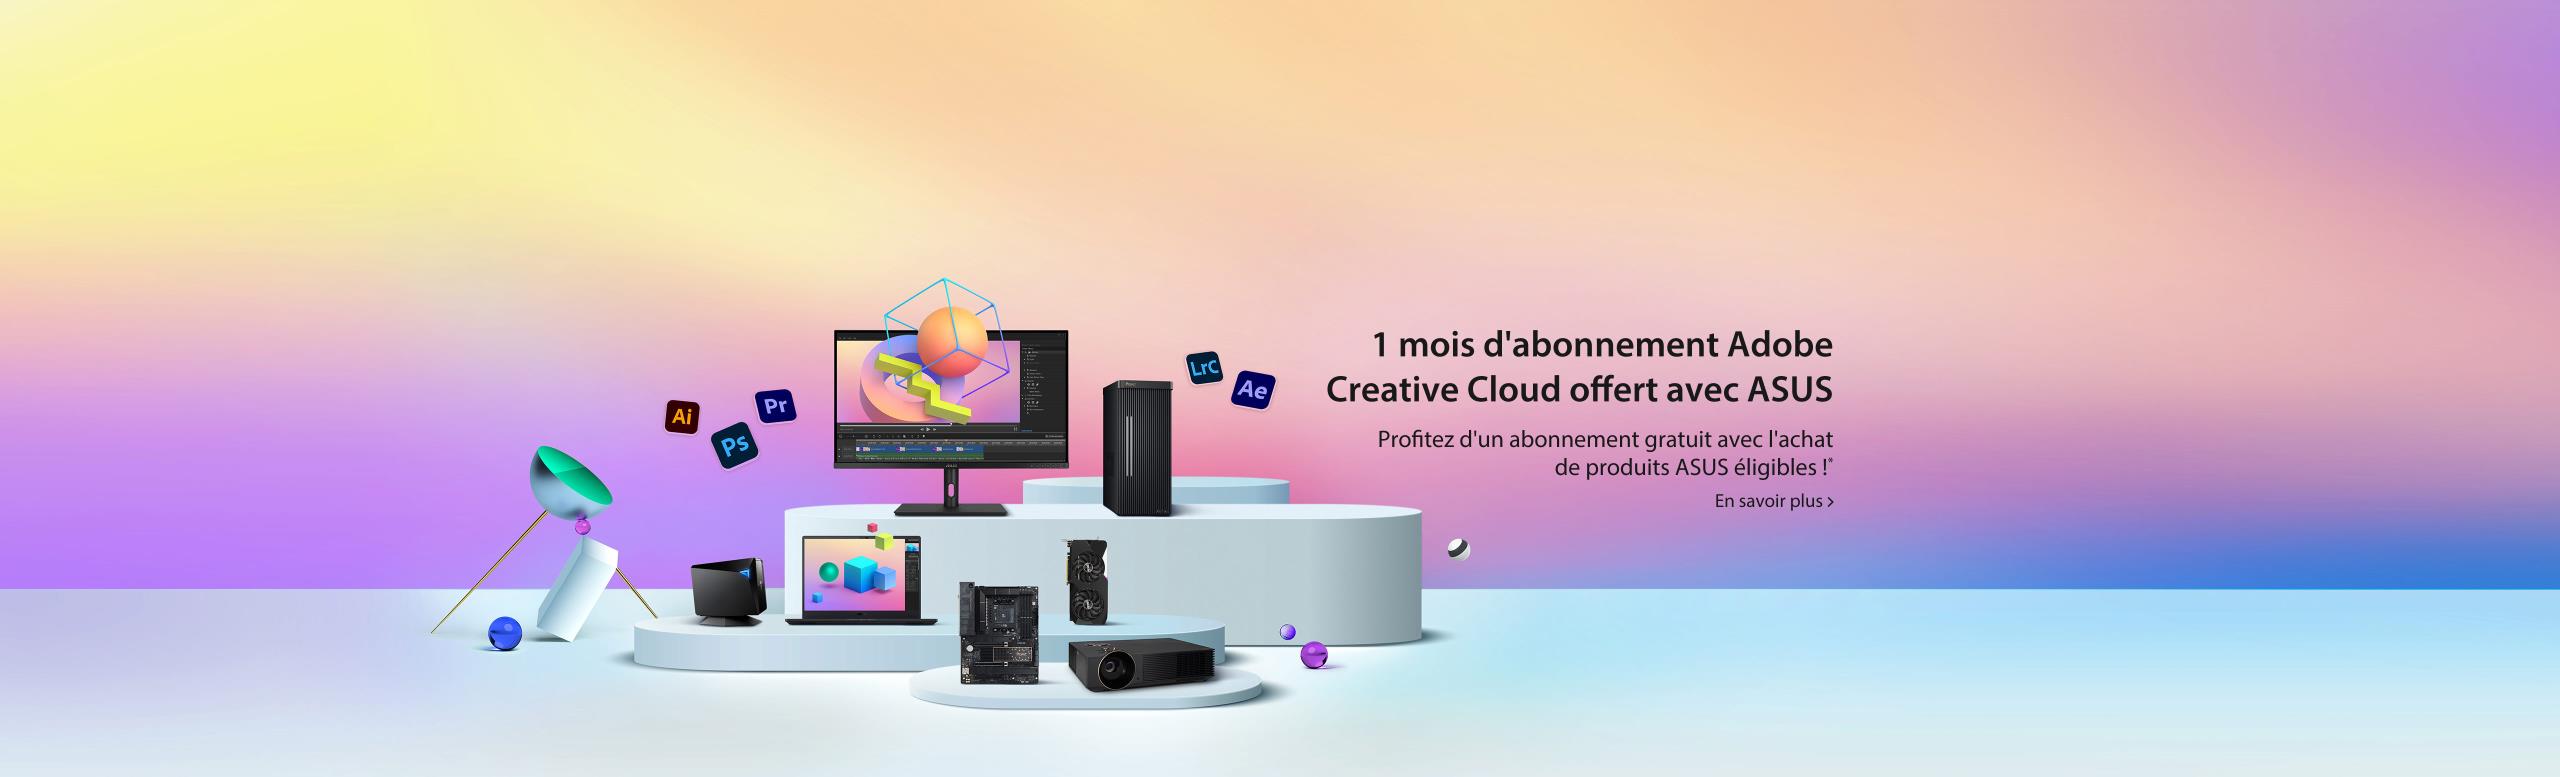 Adobe Creative Clod offert avec ASUS